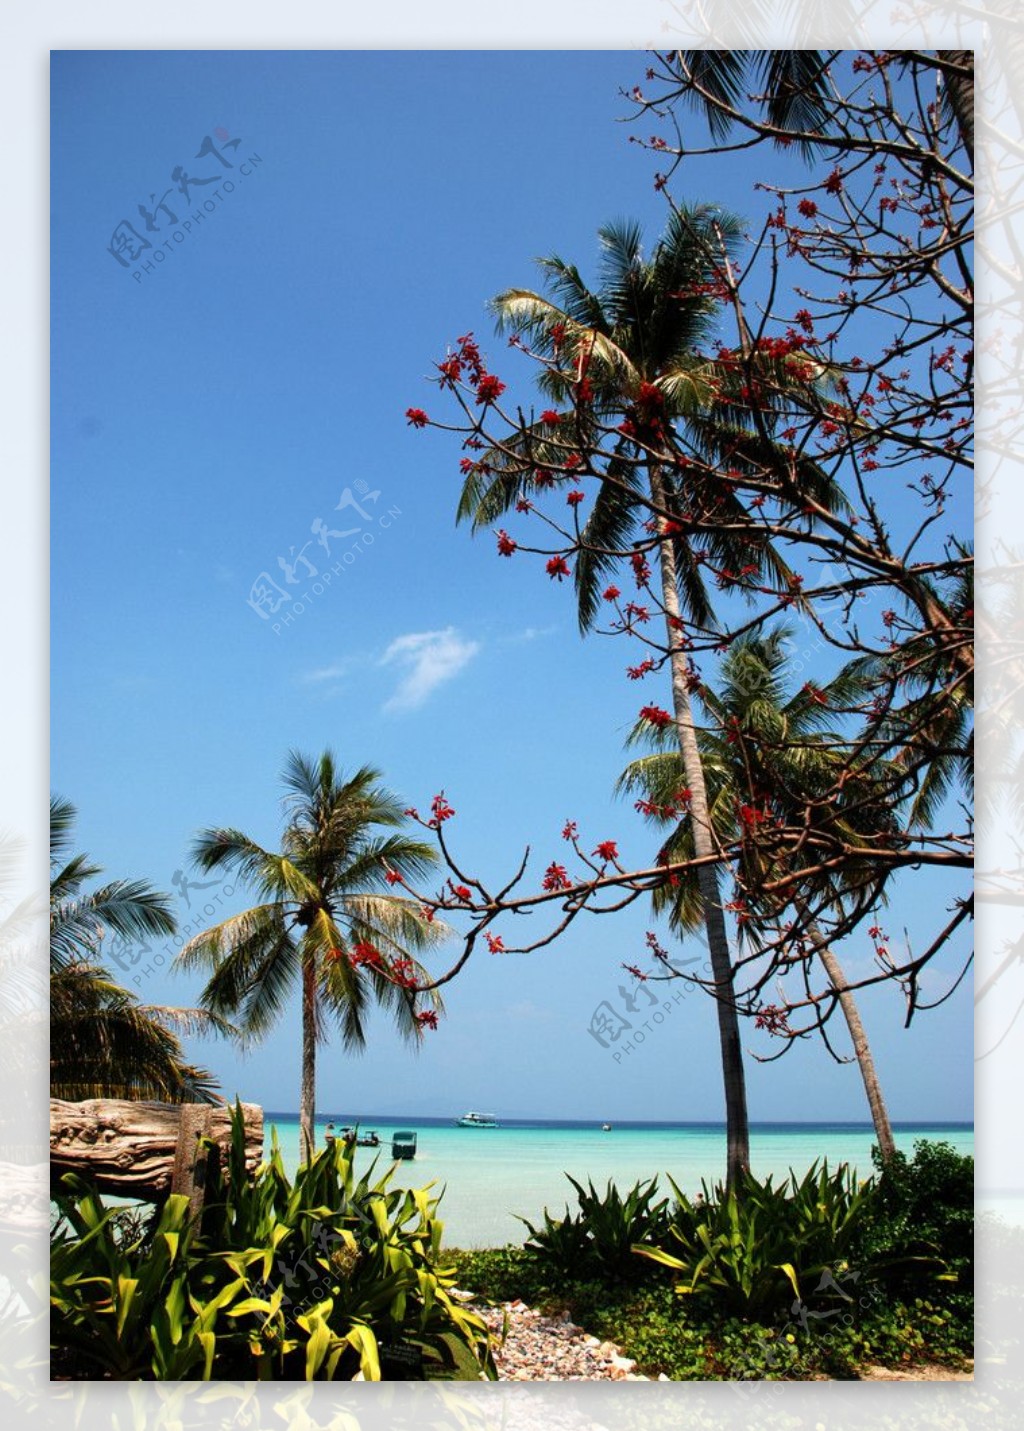 泰国PP岛沙滩图片